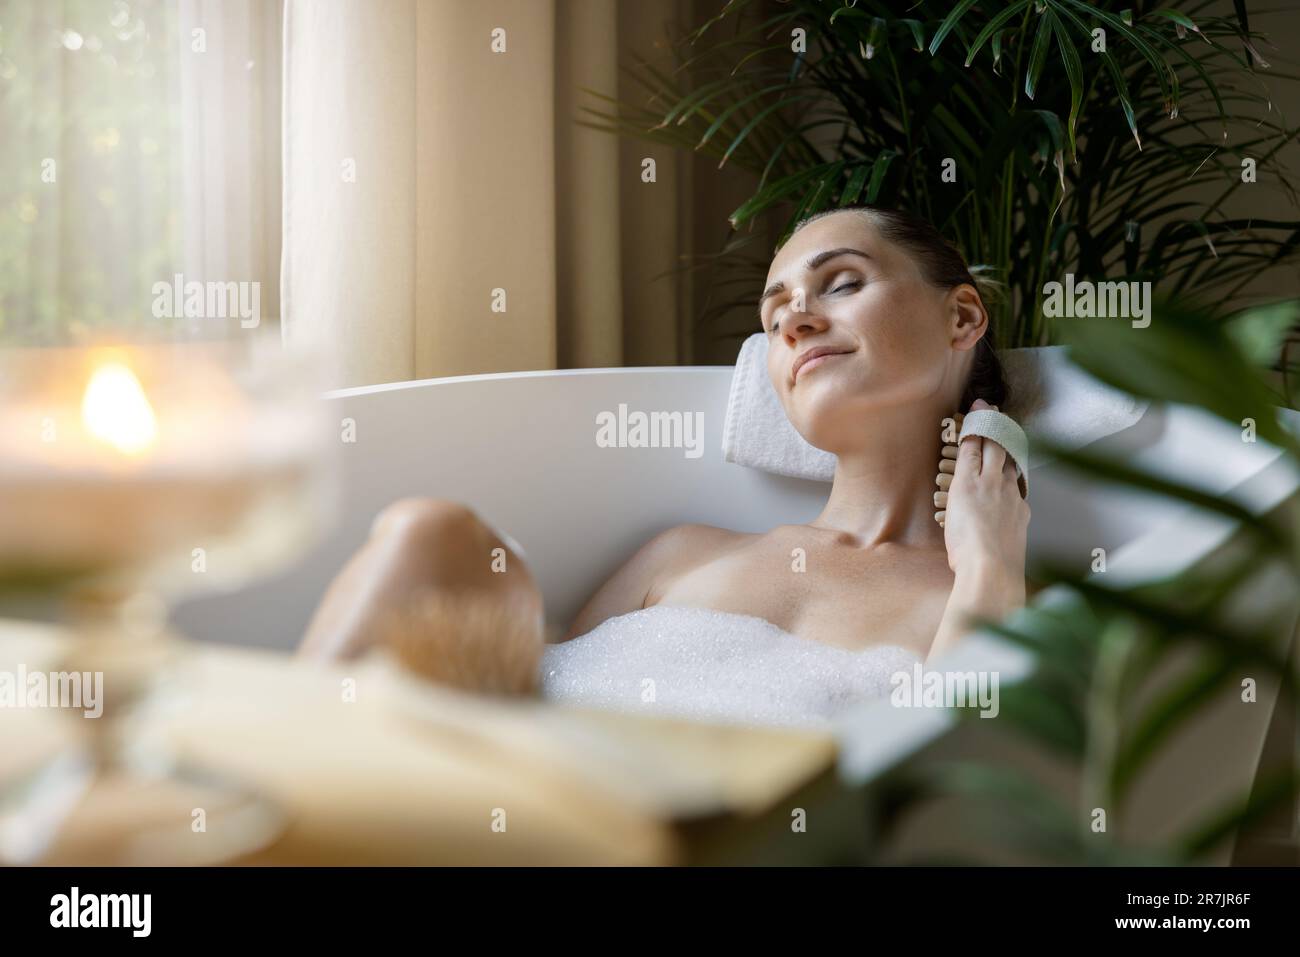 woman enjoying spa bath with foam and body massage brush Stock Photo